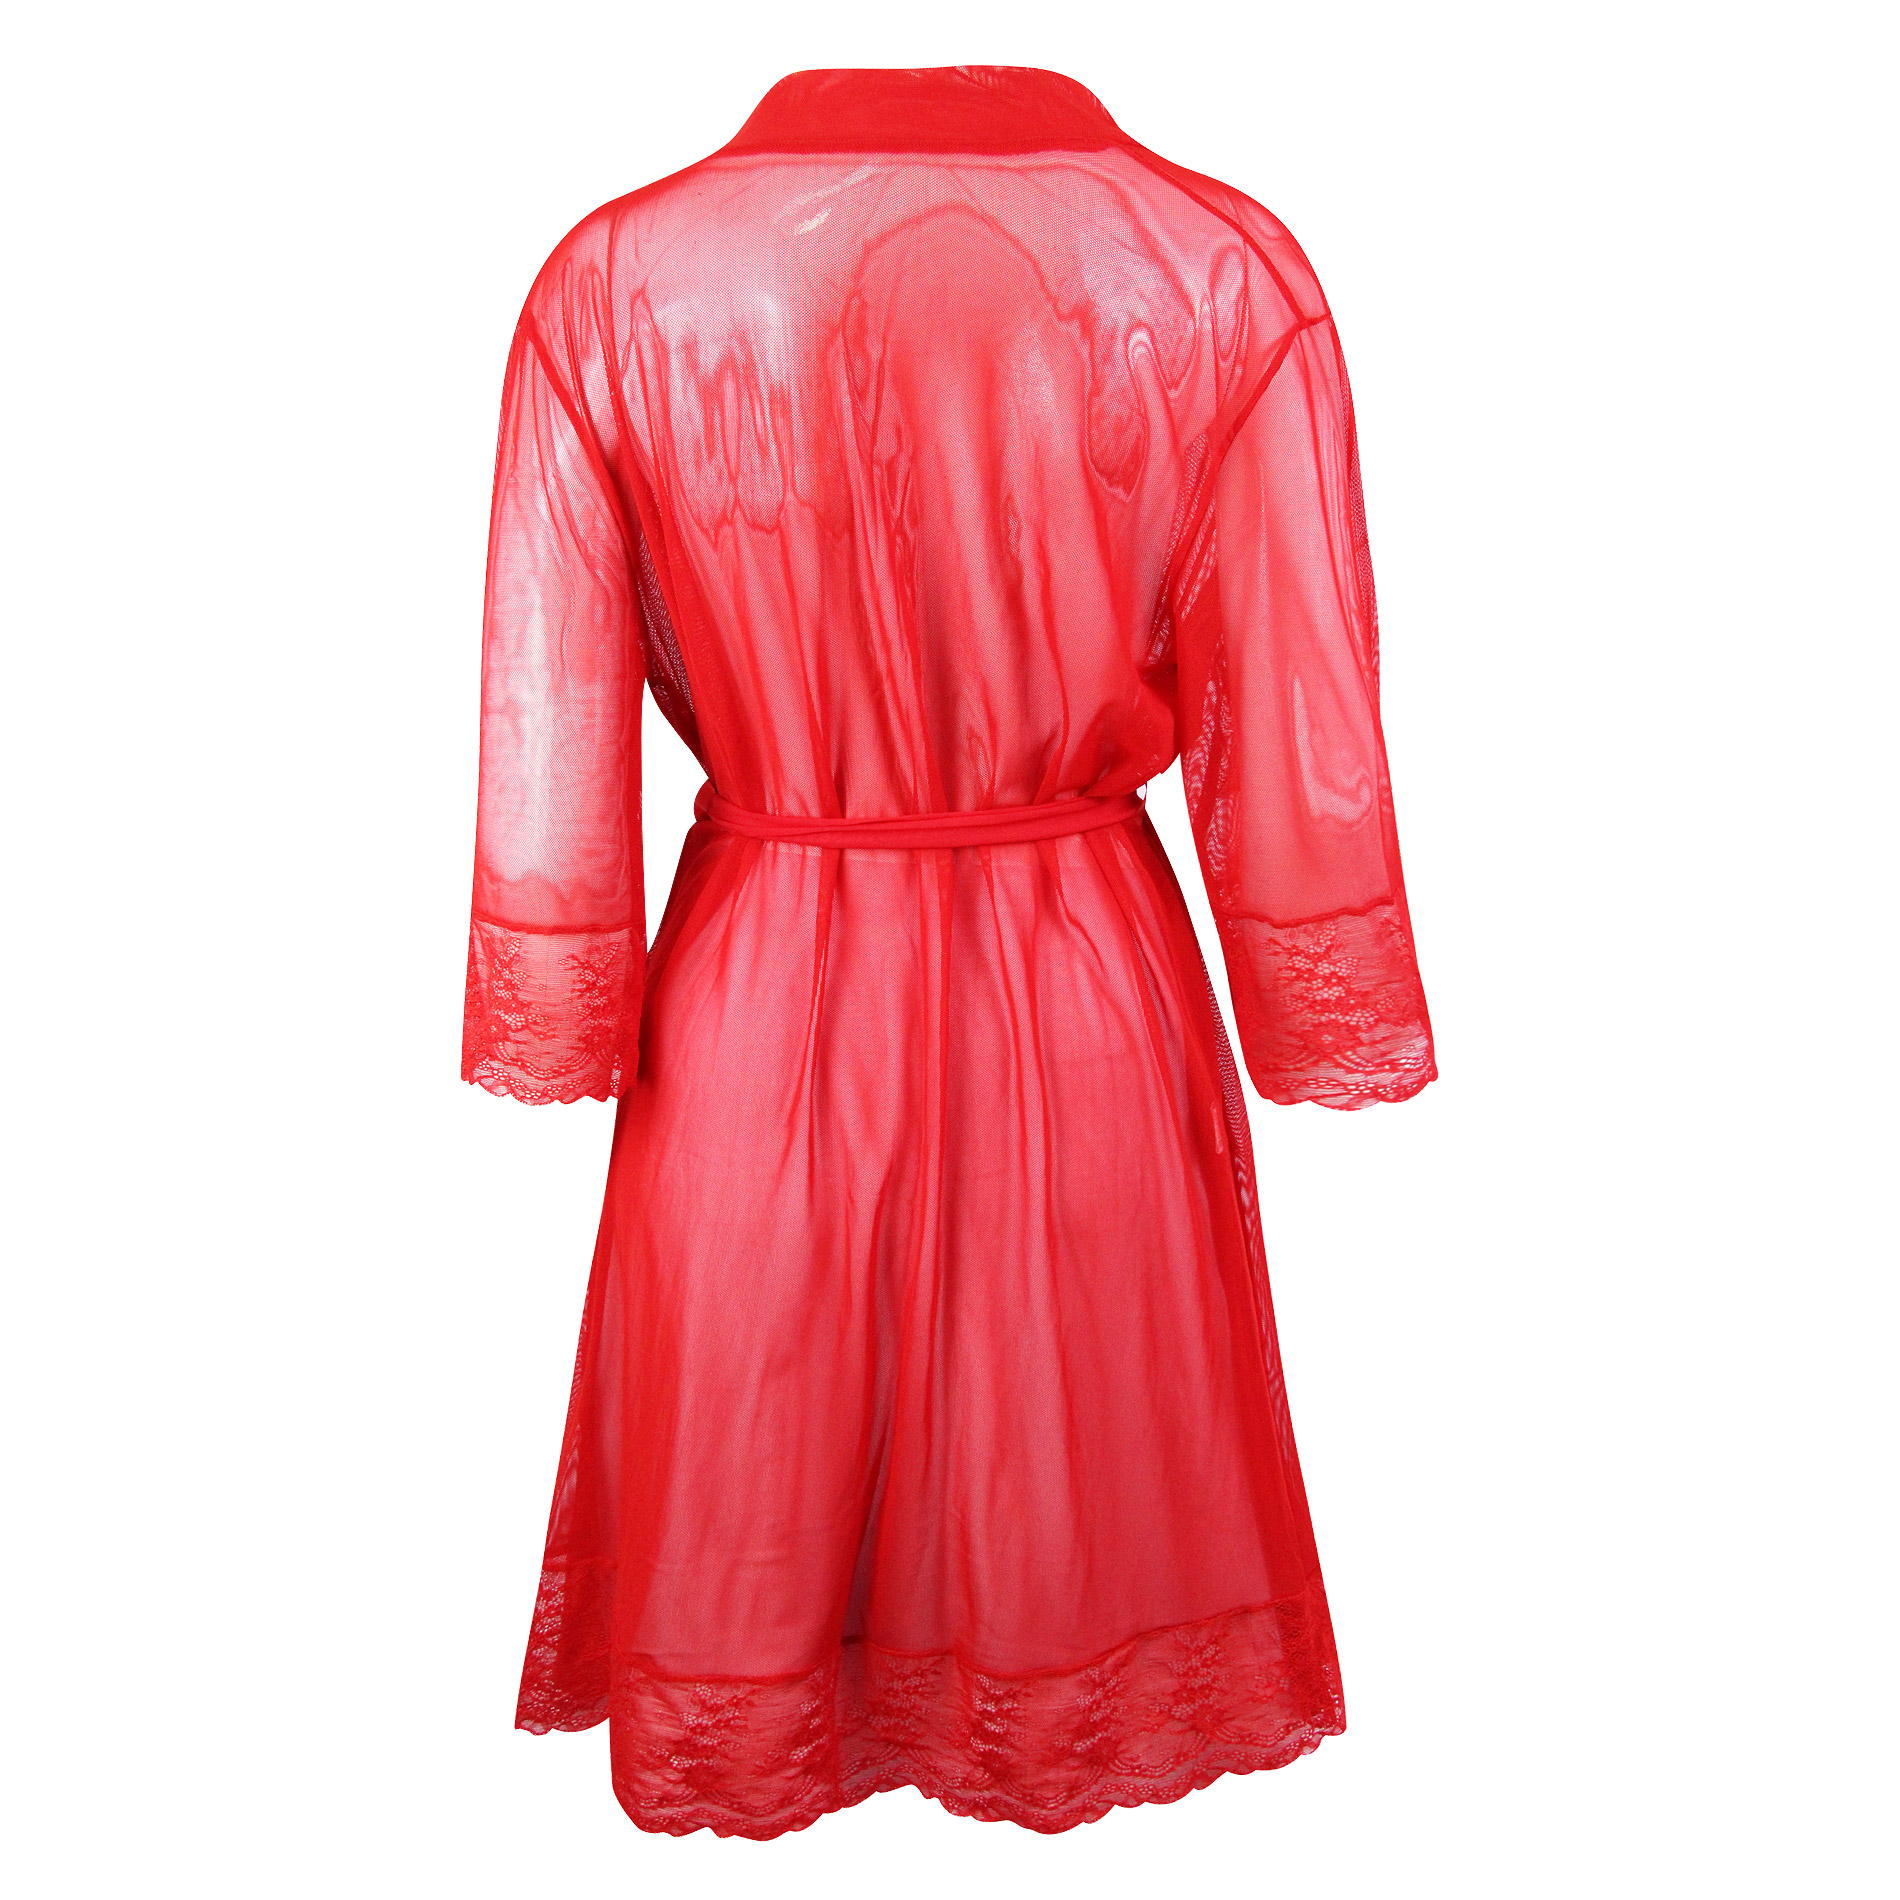 لباس خواب زنانه ماییلدا مدل 3685-804 رنگ قرمز -  - 3